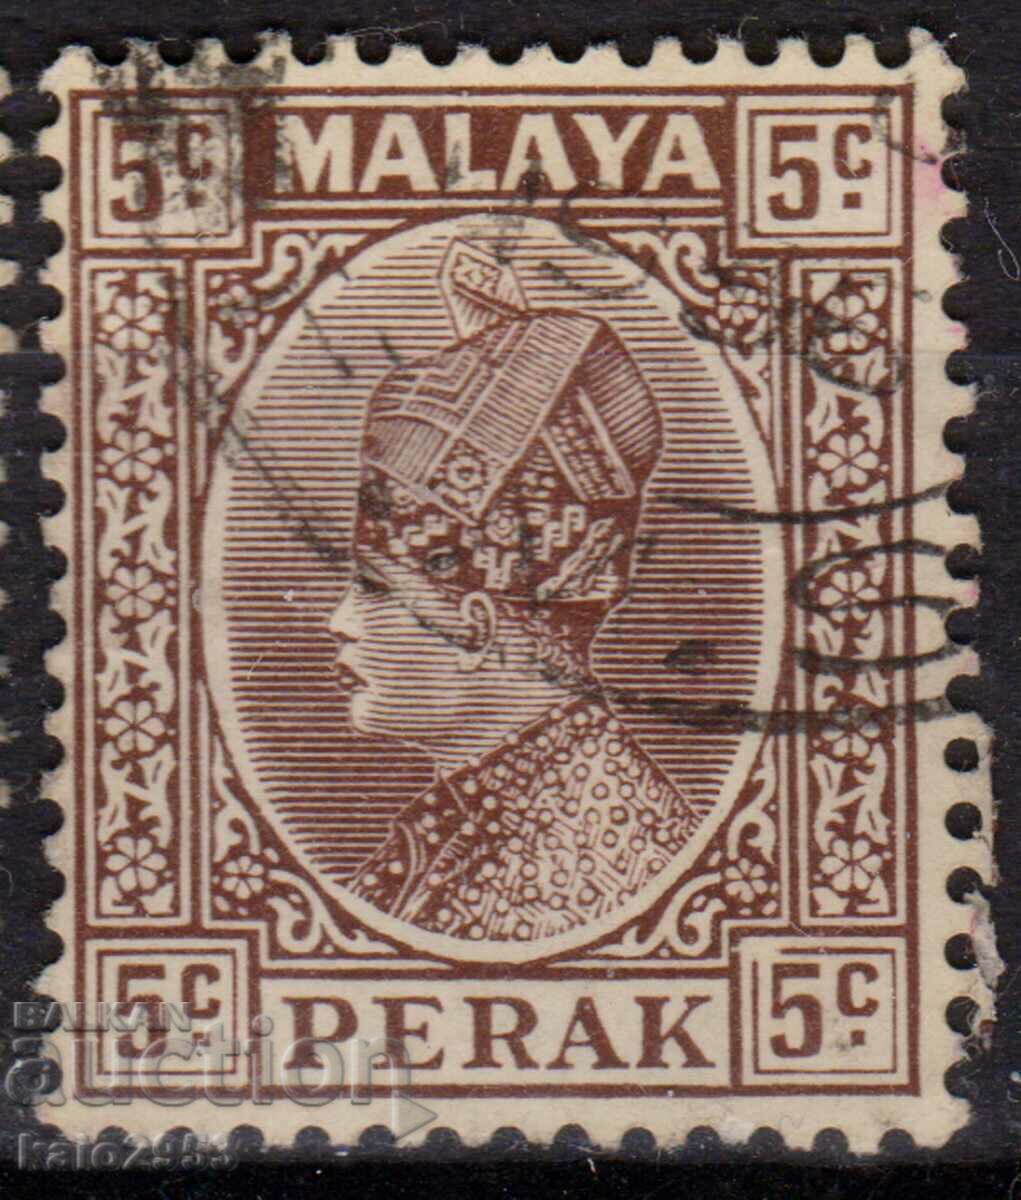 GB/Malaya/Perак-1935-Редовна-Султан Искандър,клеймо